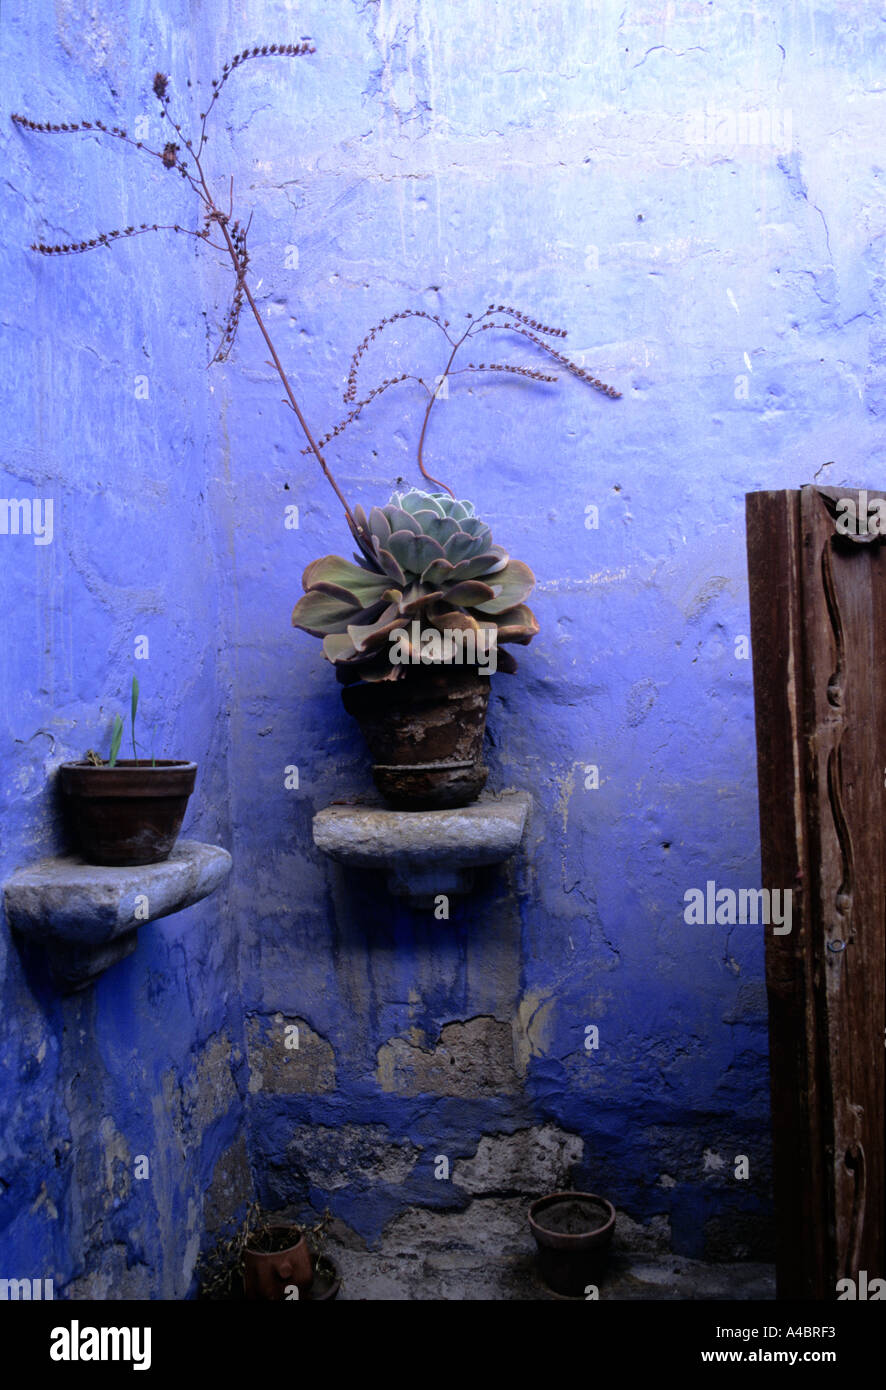 Arequipa, Pérou. Le Monastère de Santa Catalina, les plantes en pot contre un mur bleu cobalt s'est évanouie. Banque D'Images